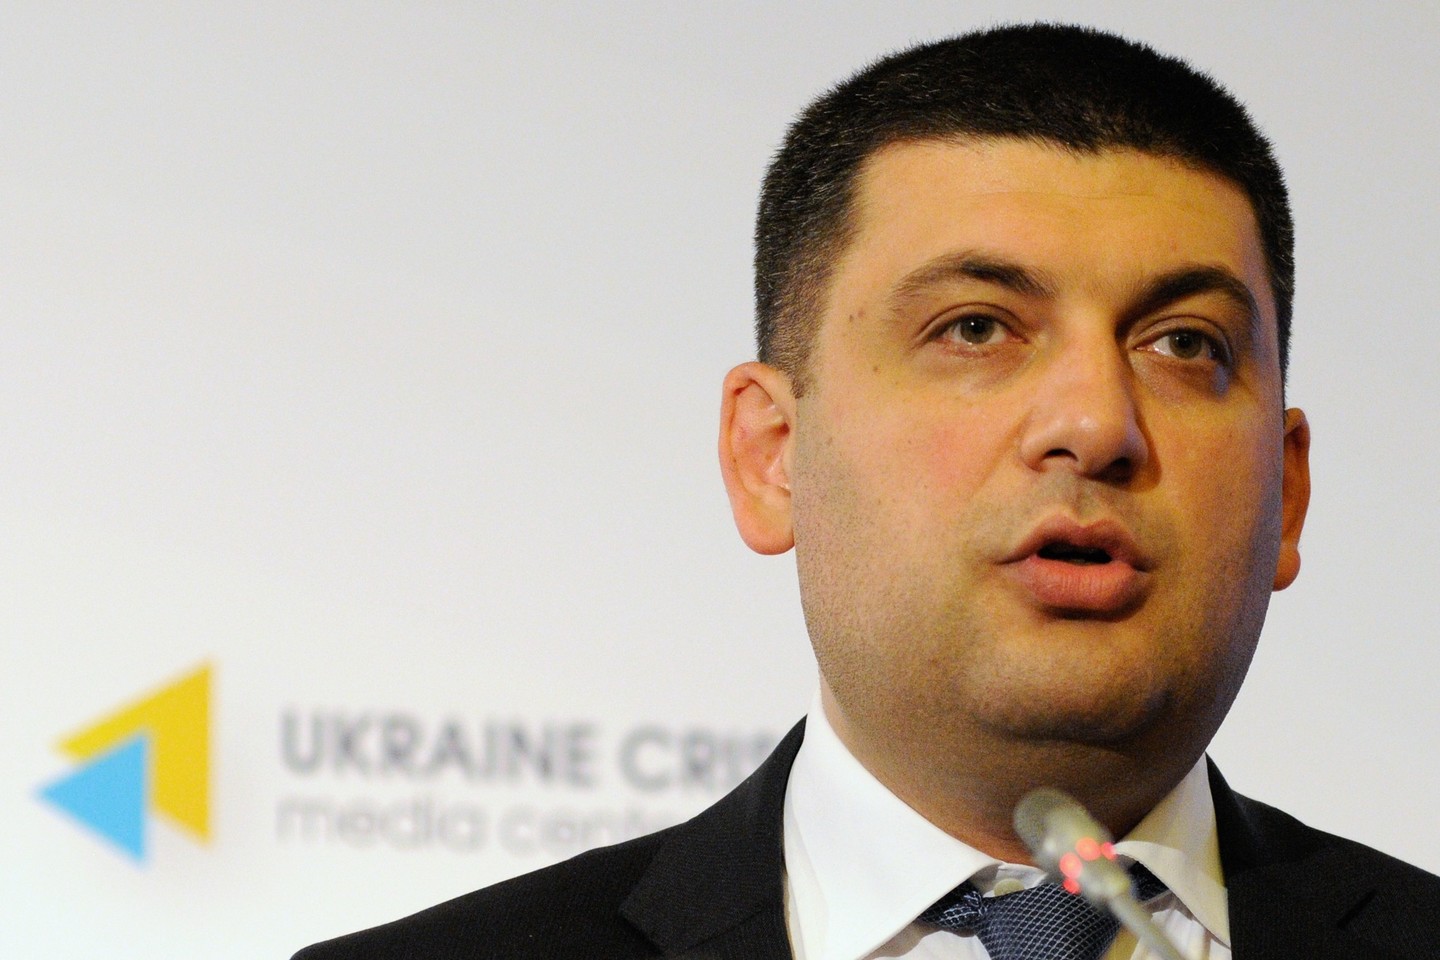 Гройсман: Через несколько лет у Украины не будет денег даже на "жалкие" пенсии